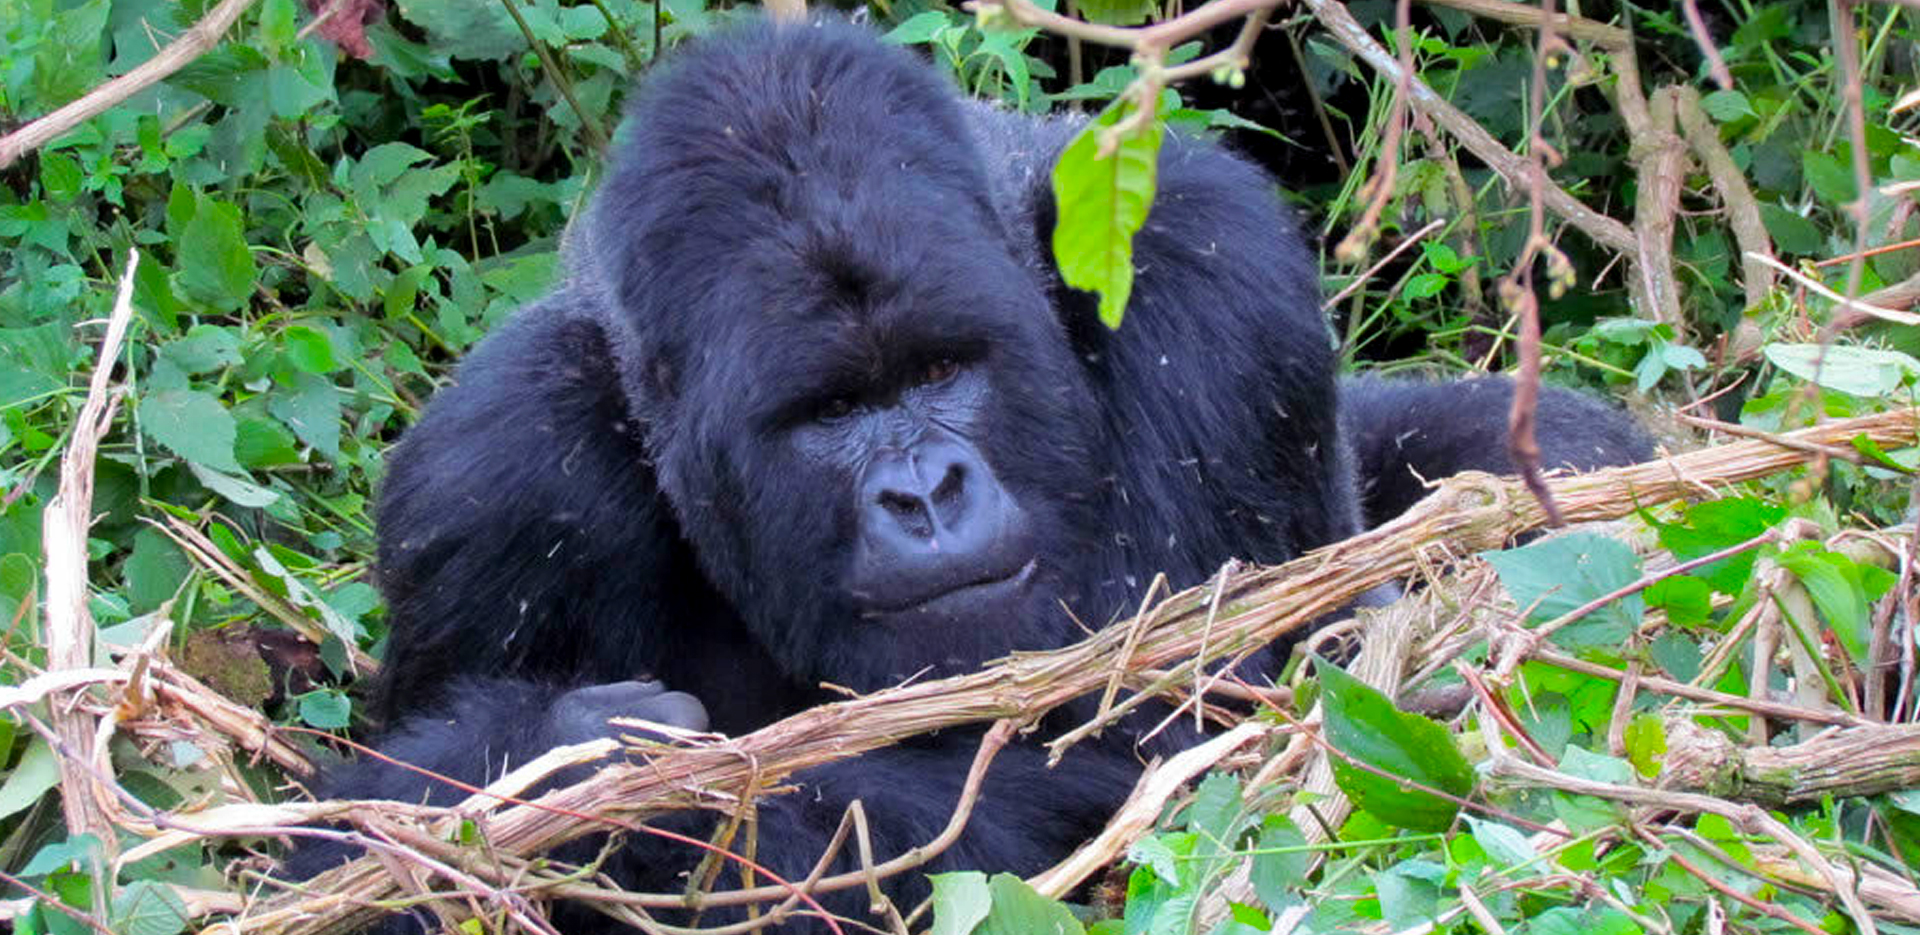 Wildlife Safaris in Uganda